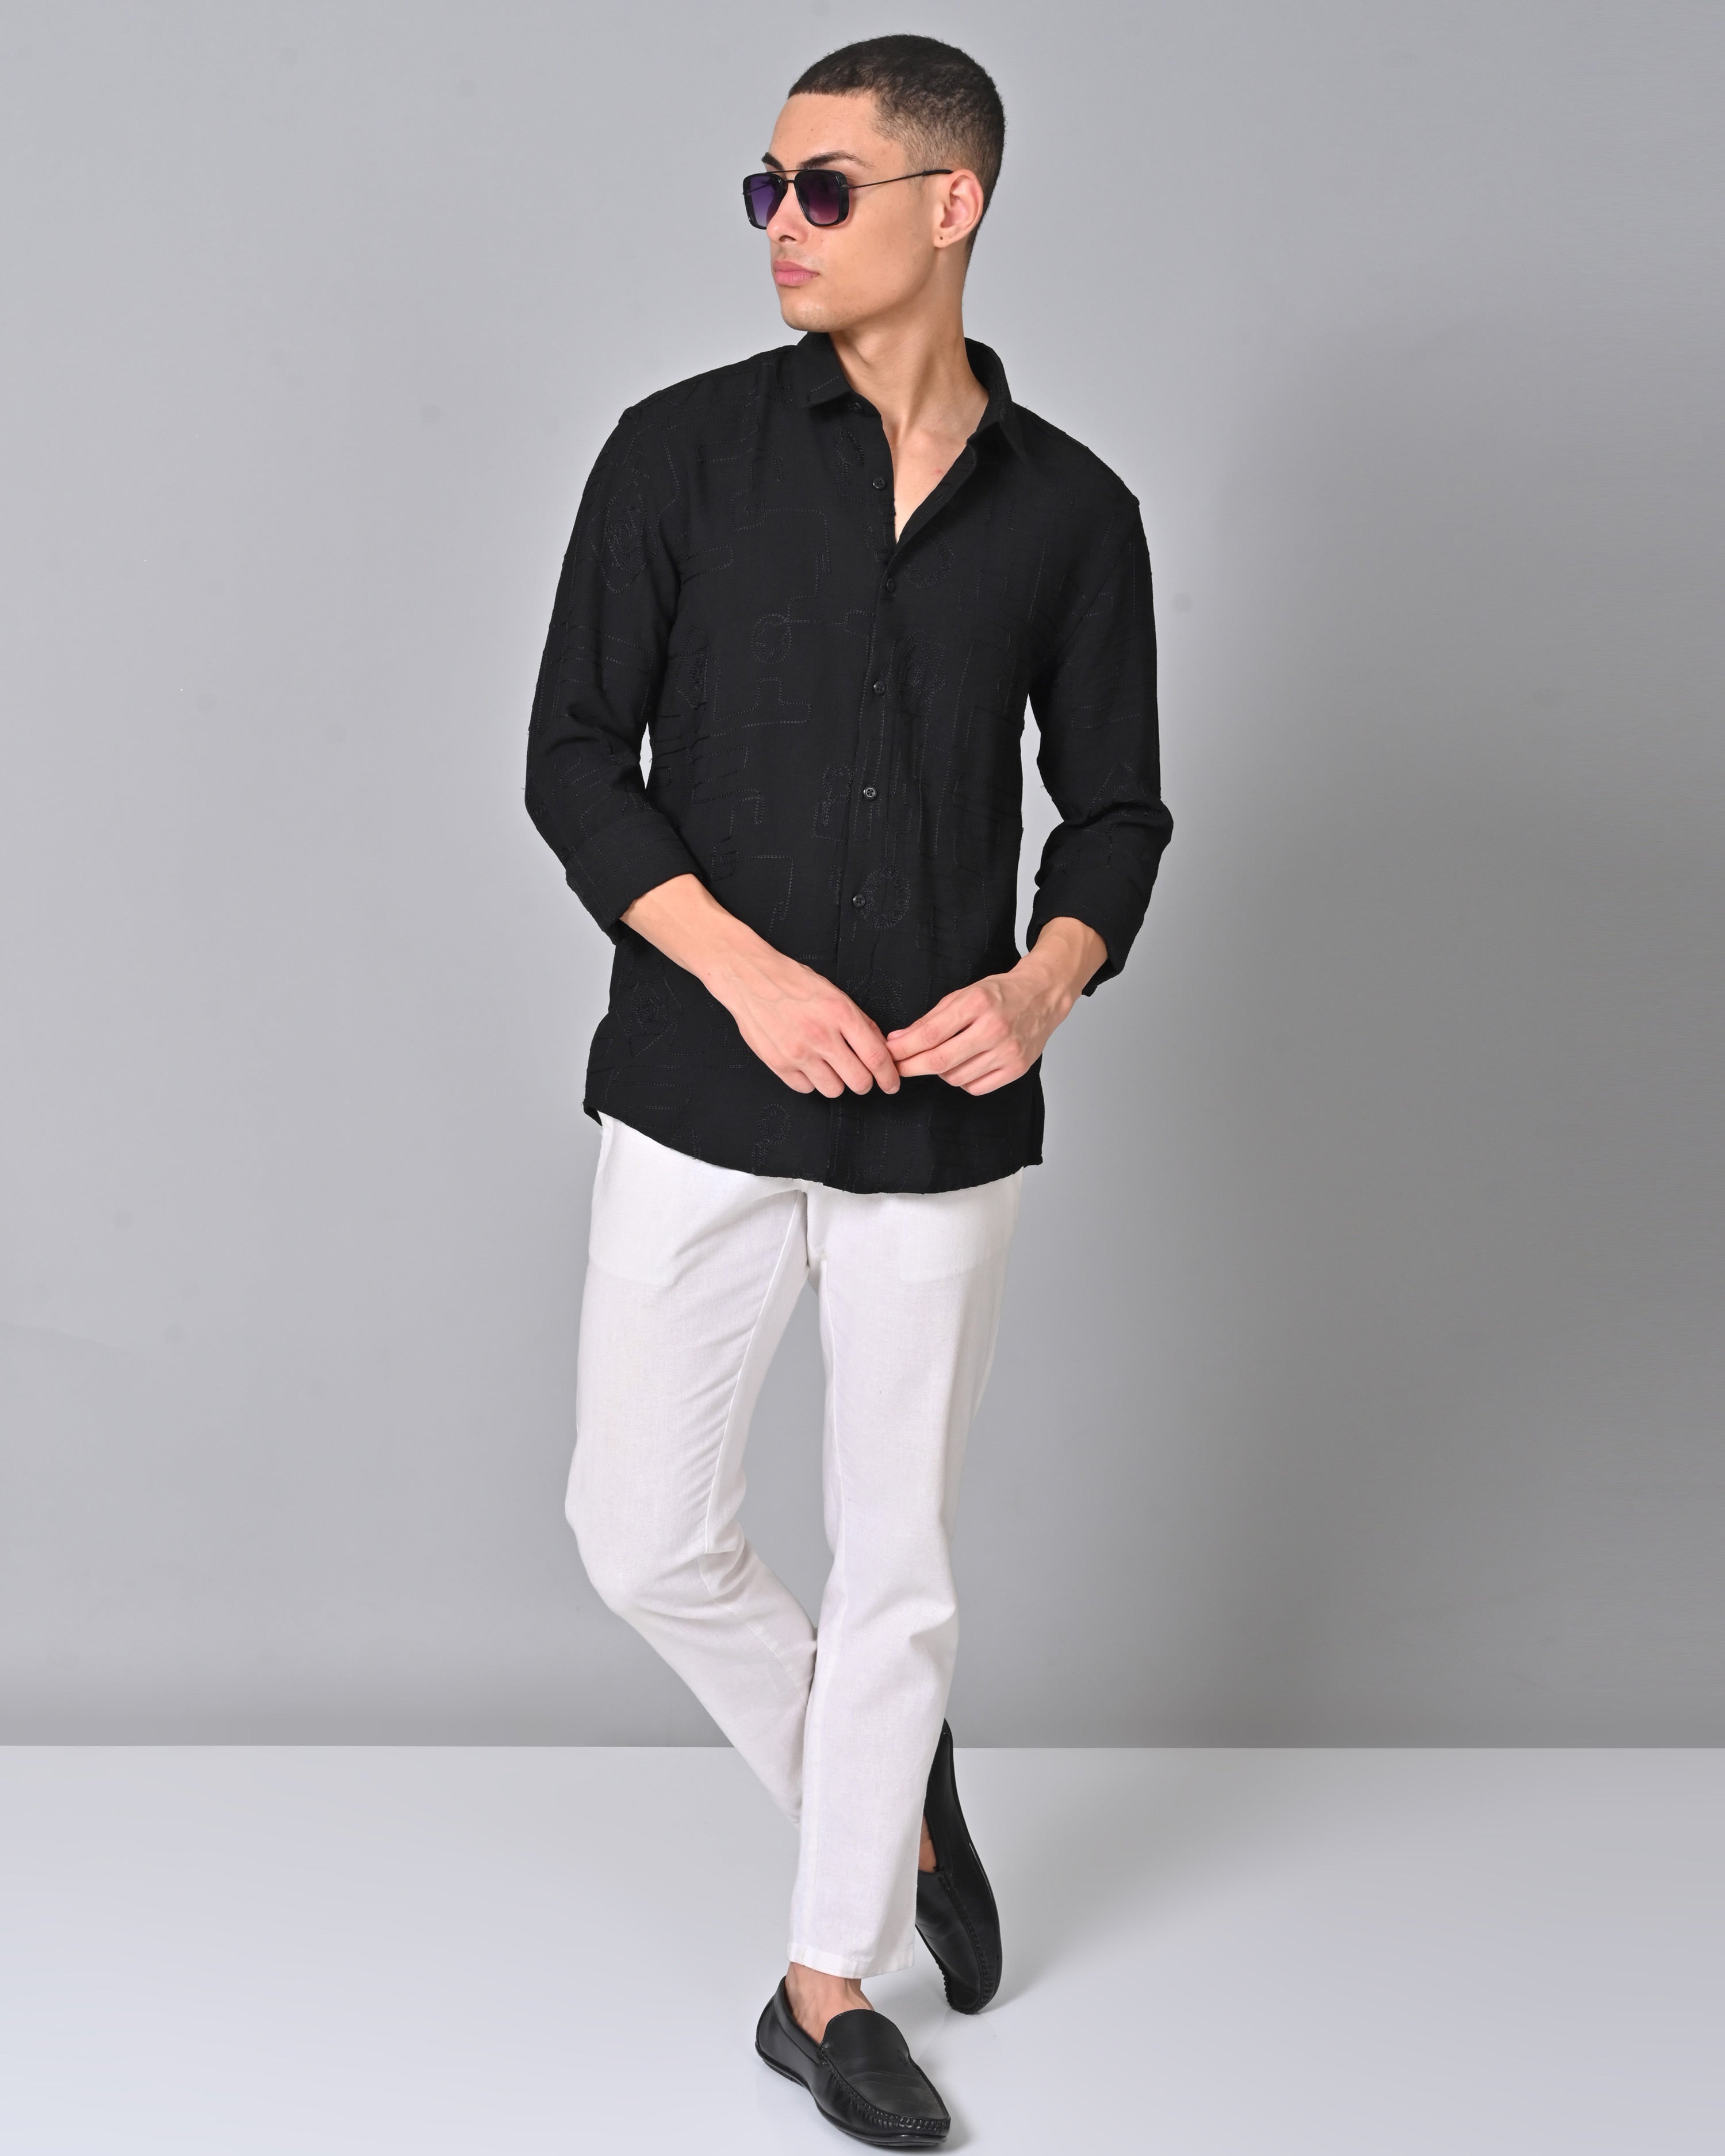 Buy Men's Embroidered Black Full Sleeve Shirt Online